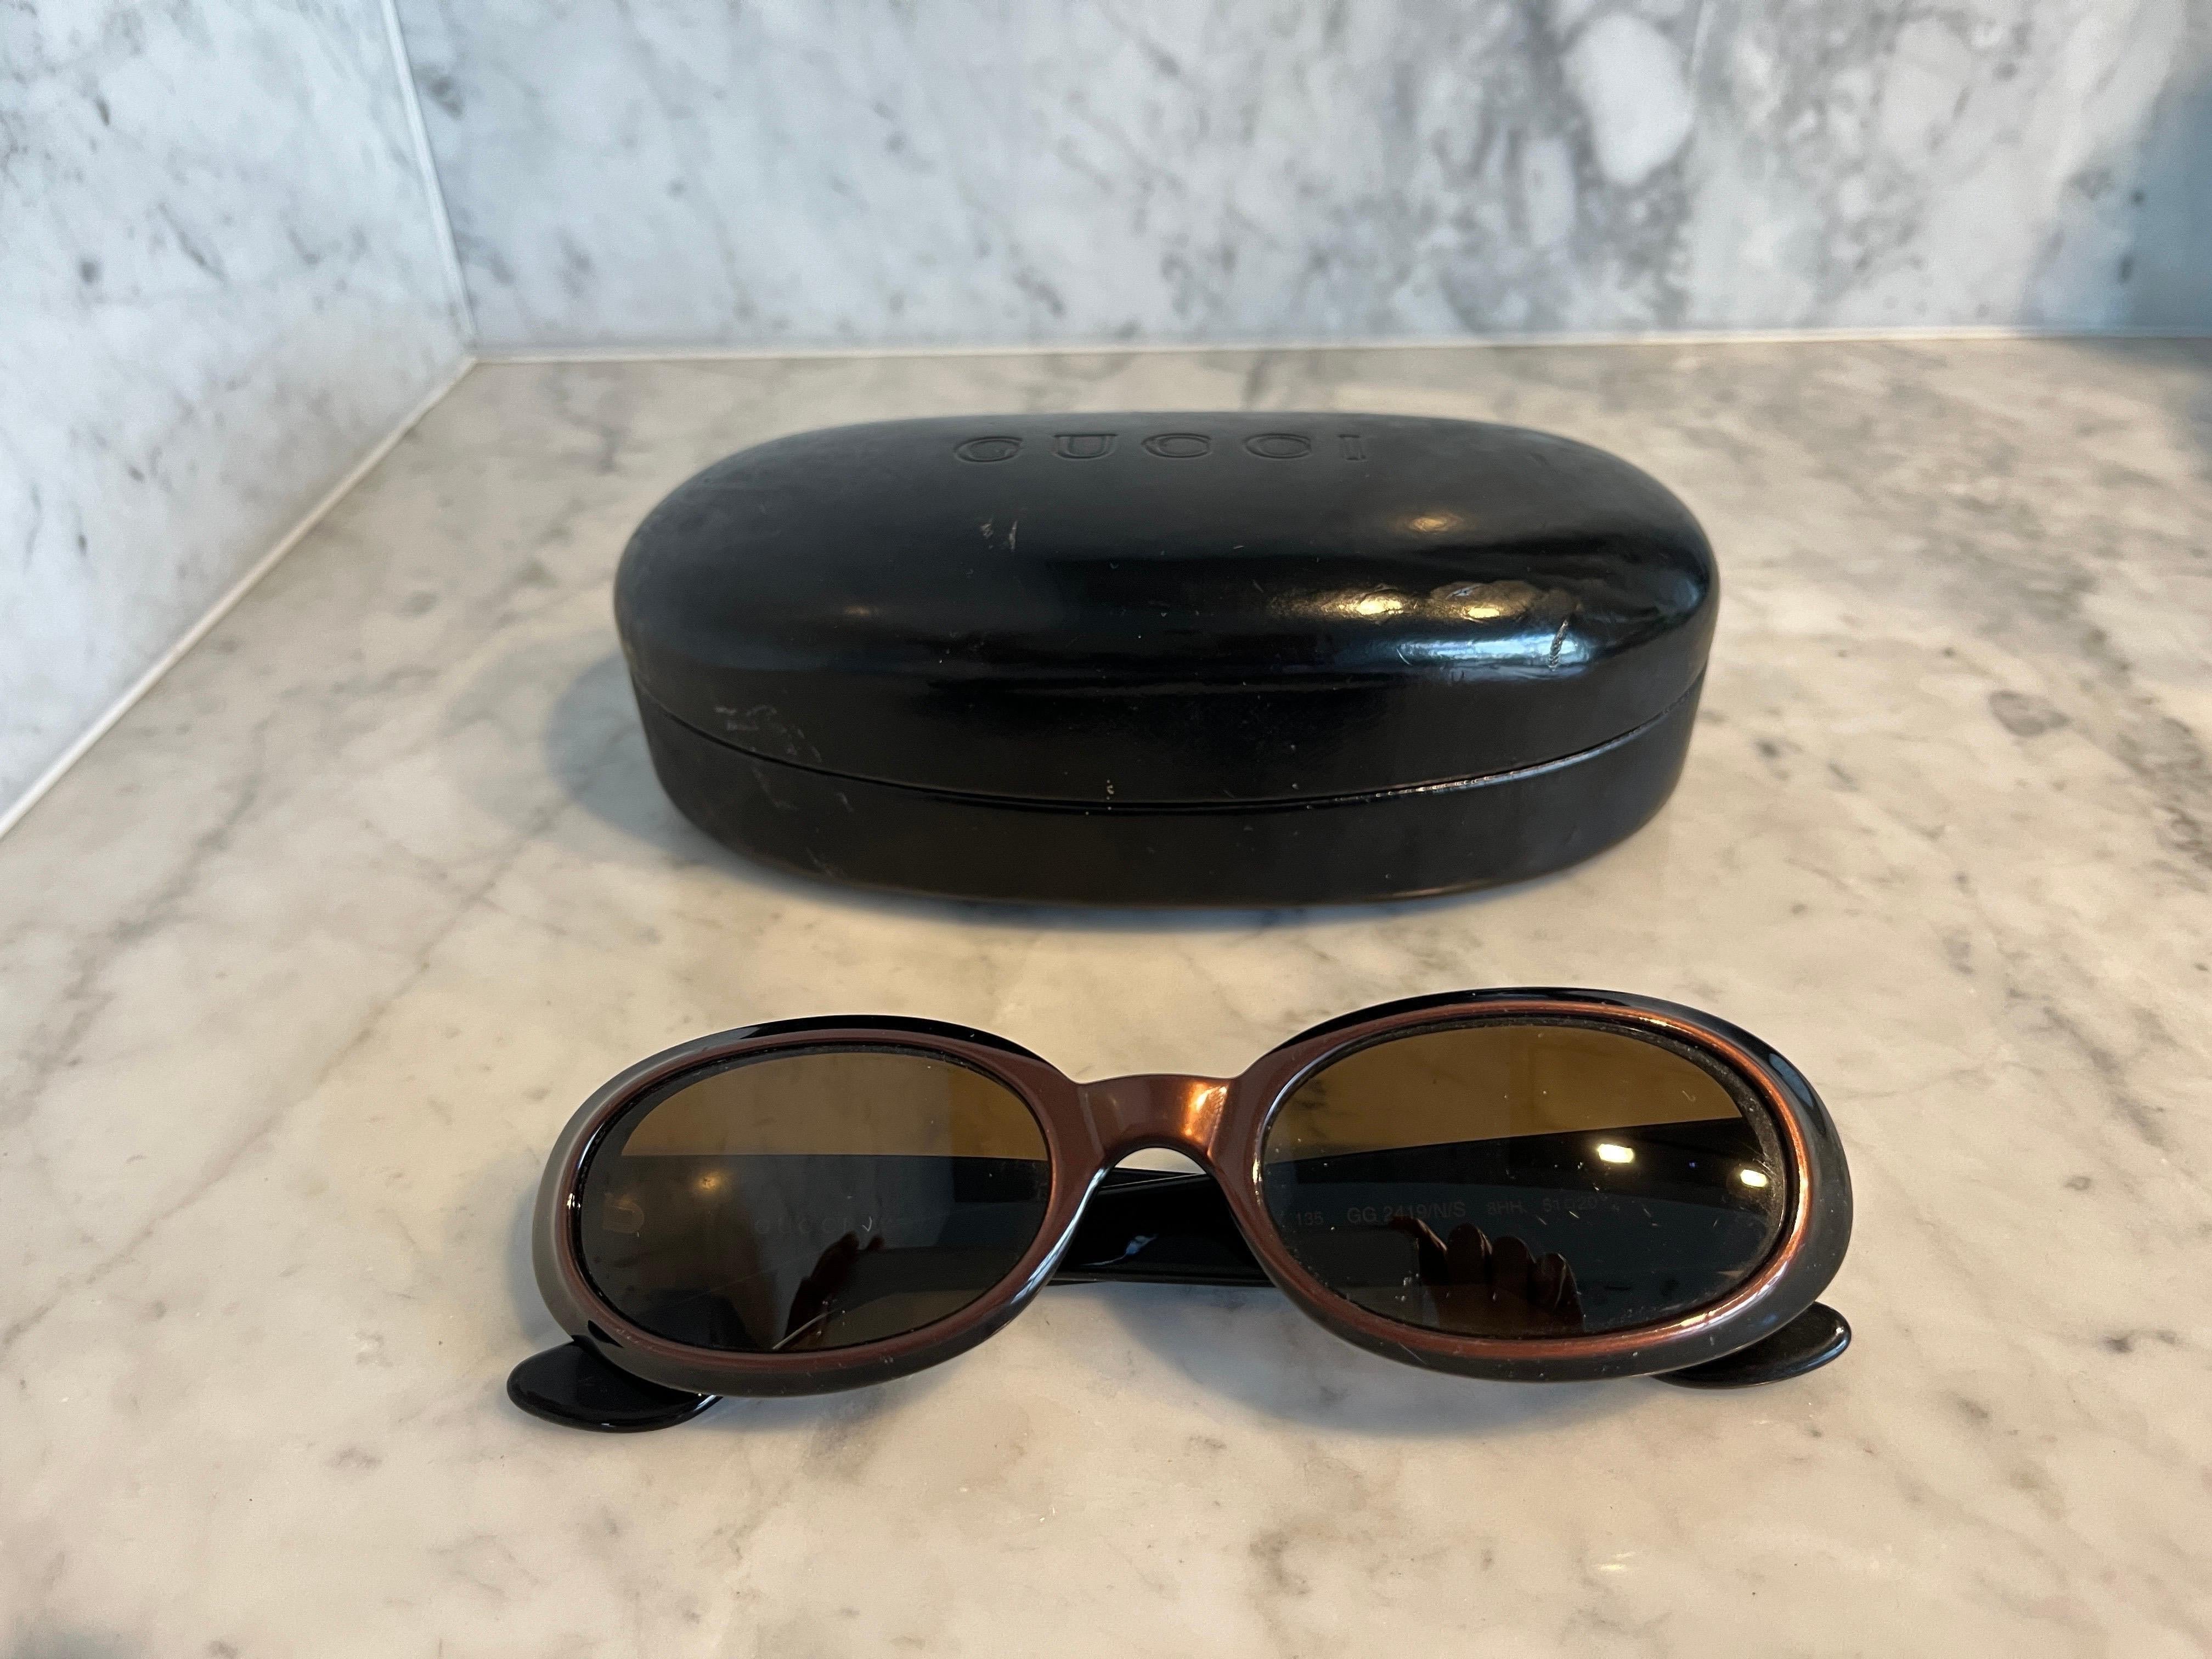 AMAZING GUCCI Vintage Cat-Eye-Sonnenbrille aus den 1990er Jahren in schwarz und braun Rahmen.

Original Vintage aus den 1990er Jahren. 

In sehr gutem Zustand.

Mit Etui.